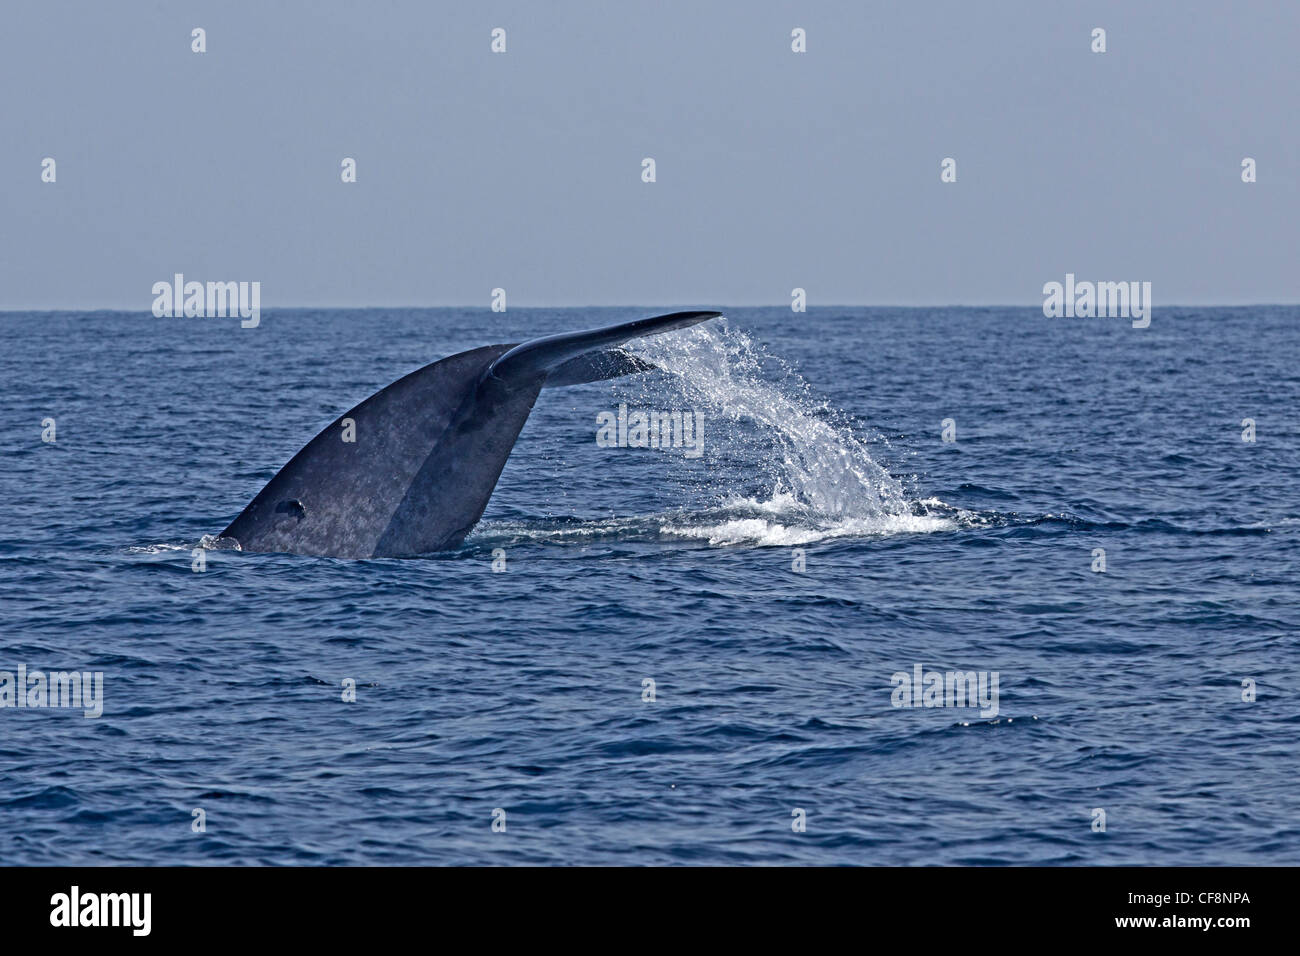 La balenottera azzurra con coda sollevata al di fuori dell'acqua Foto Stock